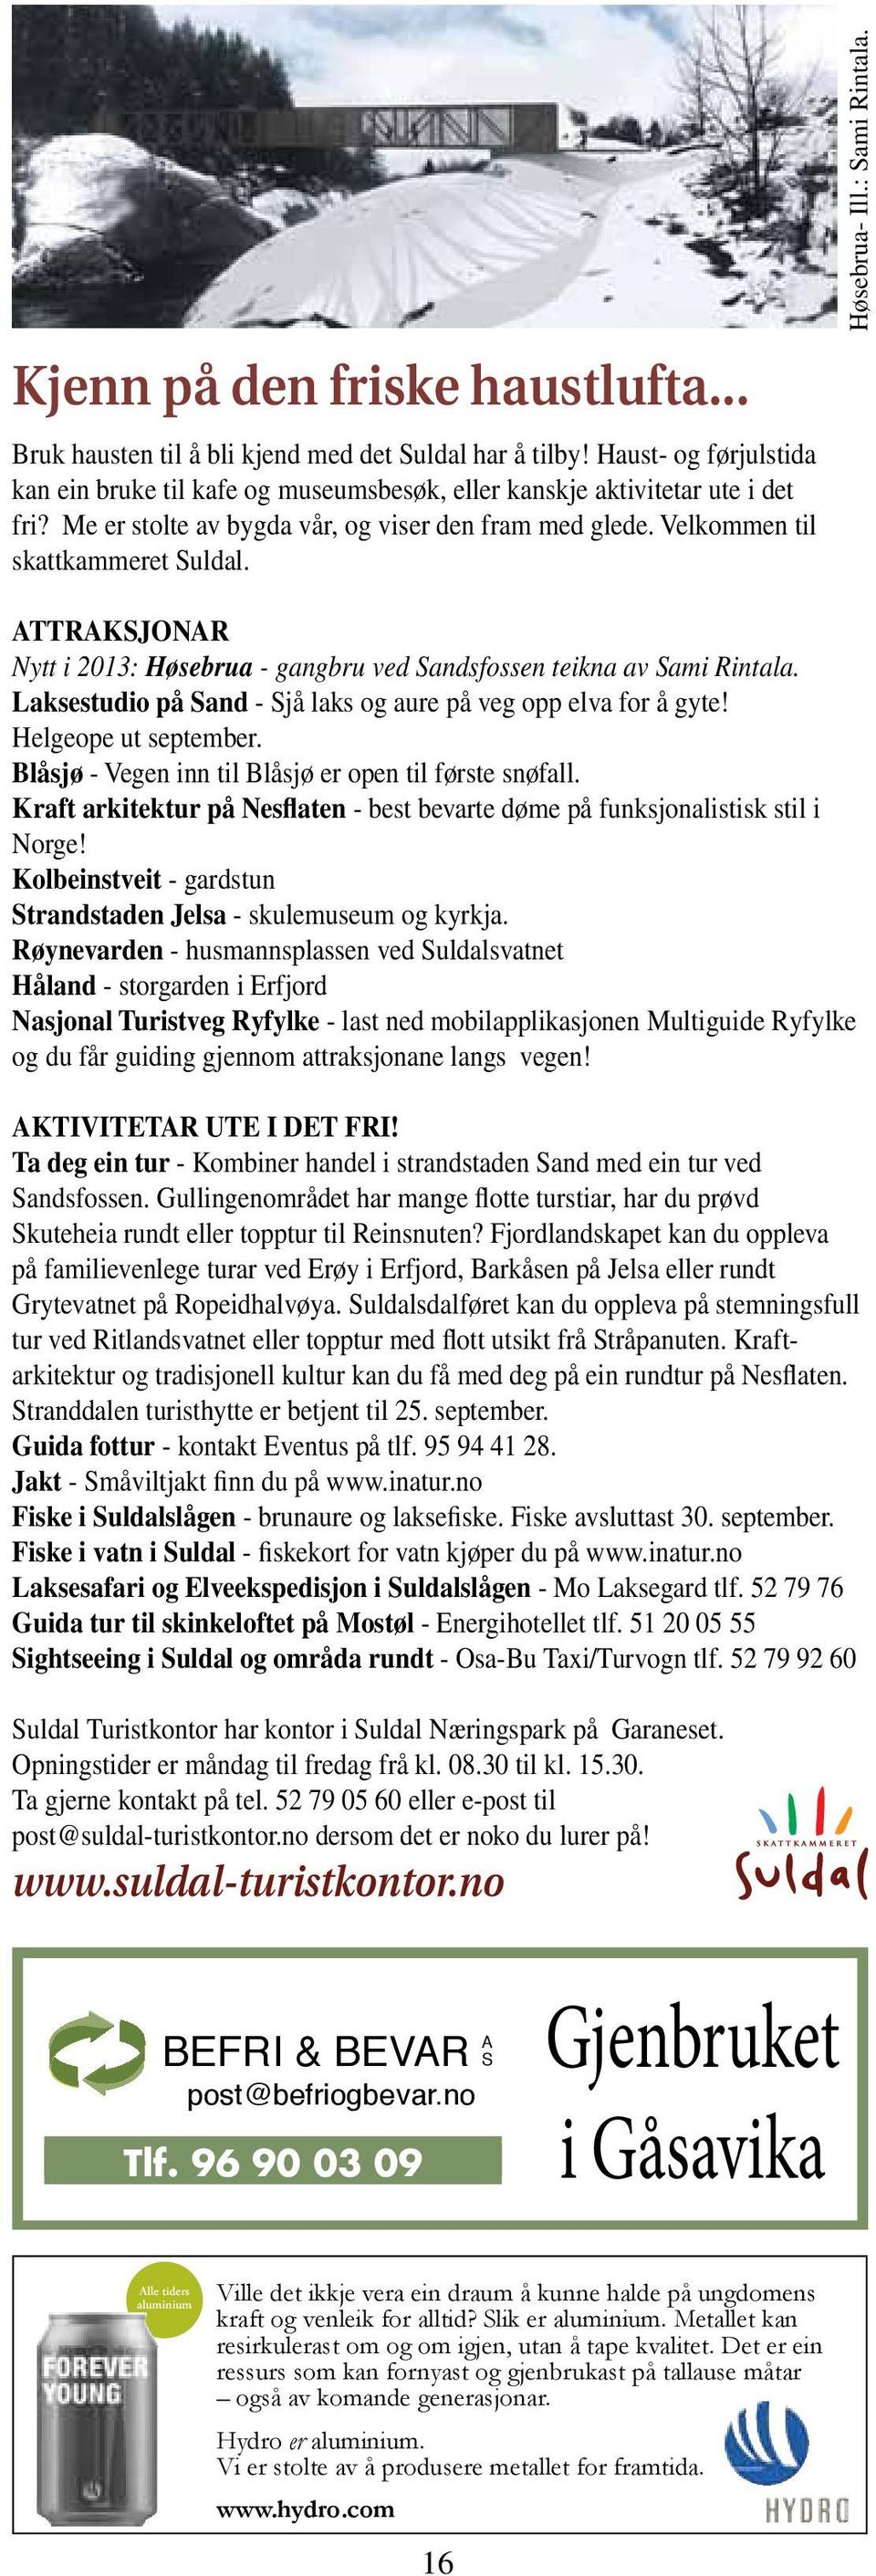 Attraksjonar Nytt i 2013: Høsebrua - gangbru ved Sandsfossen teikna av Sami Rintala. Laksestudio på Sand - Sjå laks og aure på veg opp elva for å gyte! Helgeope ut september.